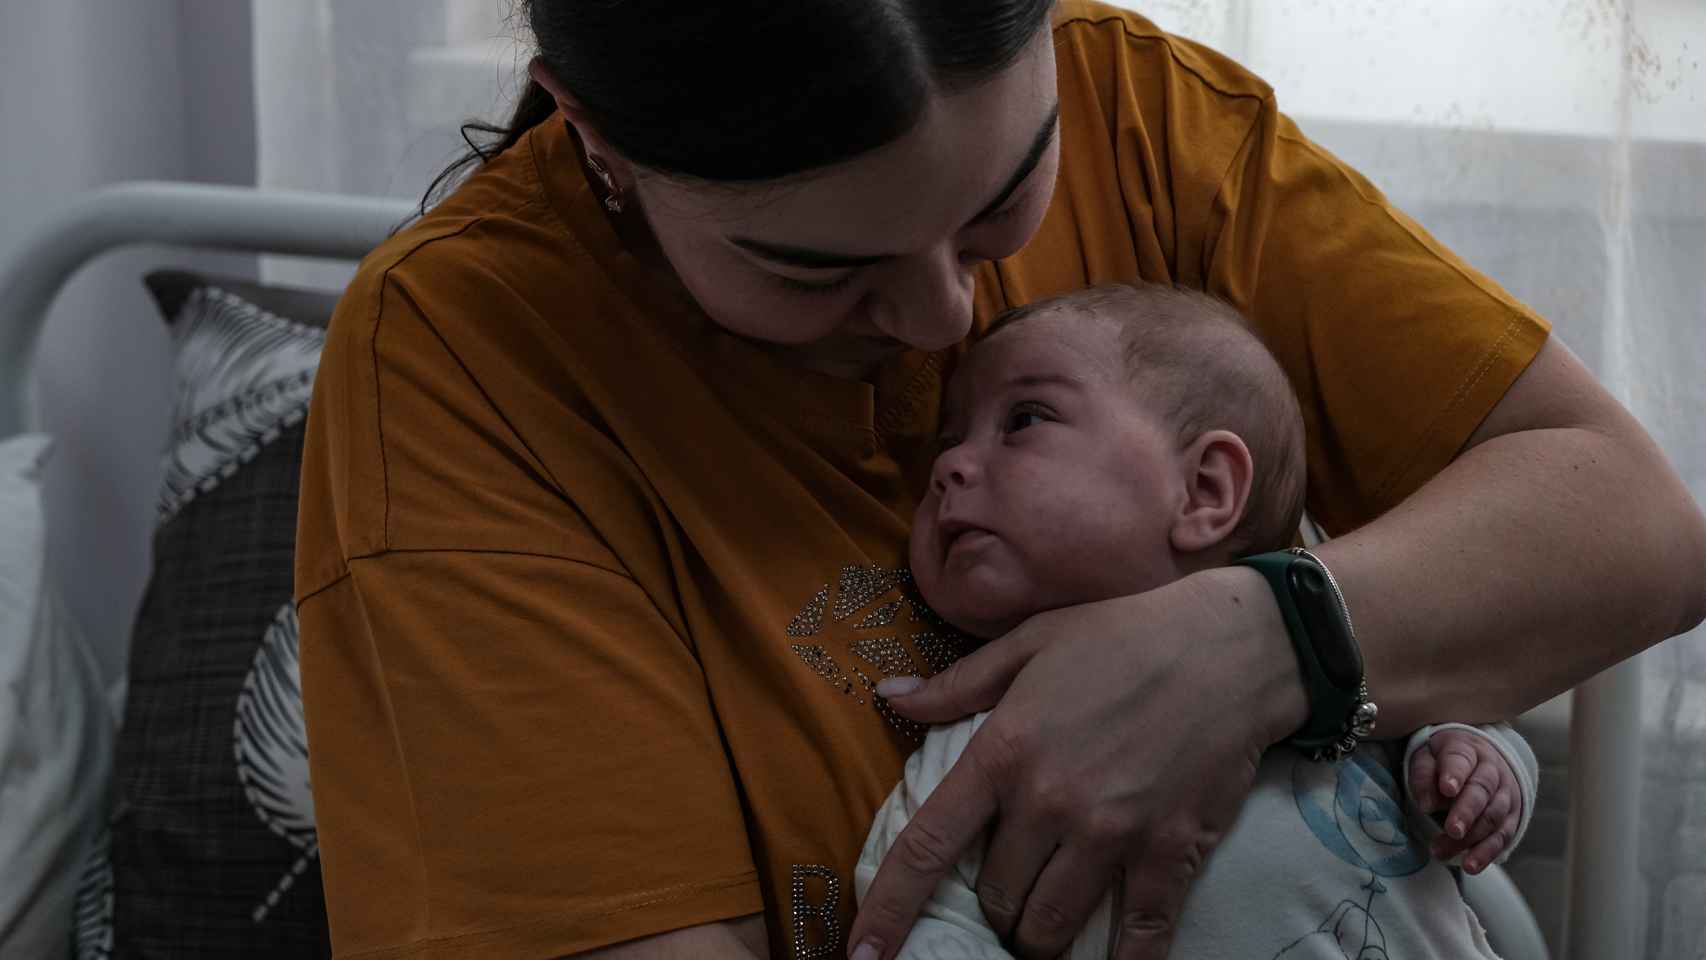 Uno de los pacientes más pequeños de este hospital infantil de cuidados paliativos, junto con su madre